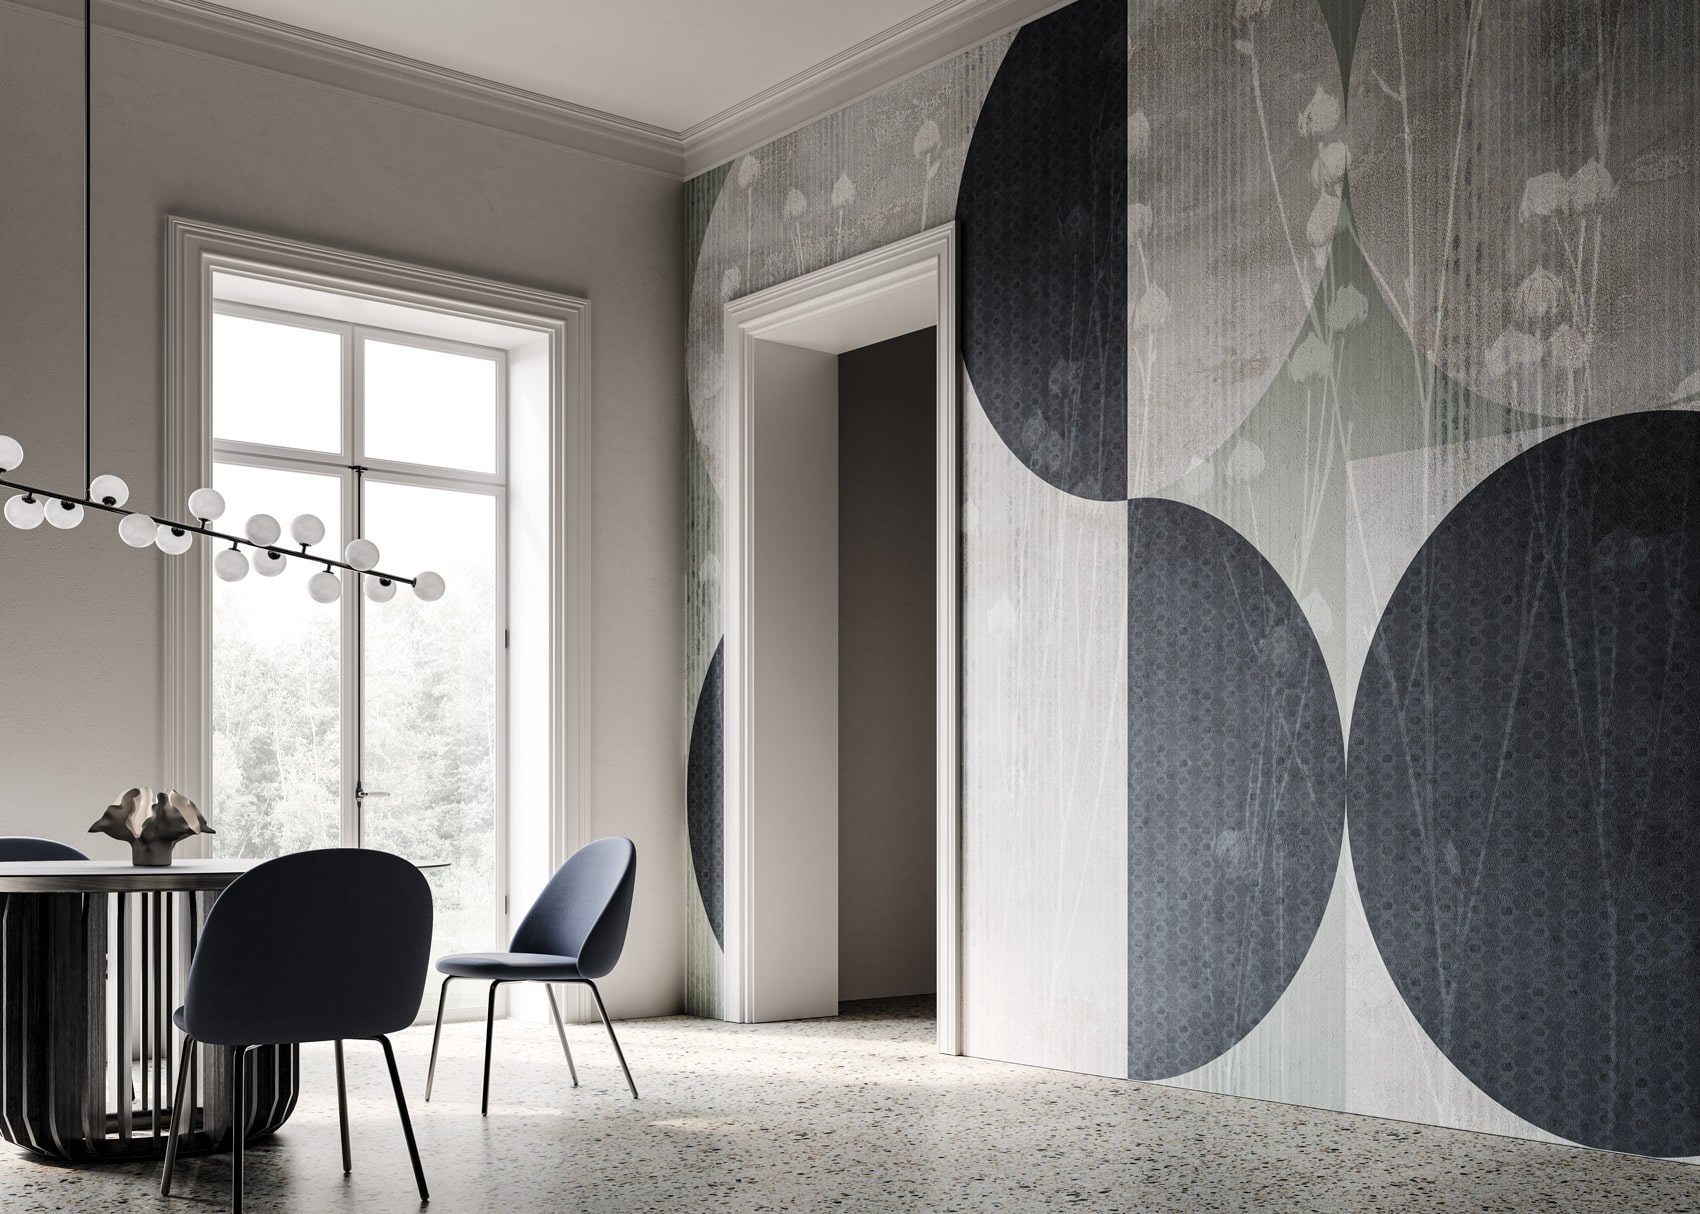 Le Papier Peint Moderne Instabilelab révolutionne avec style, luxe et élégance le design d'intérieur. Découvrez les collections raffinées.